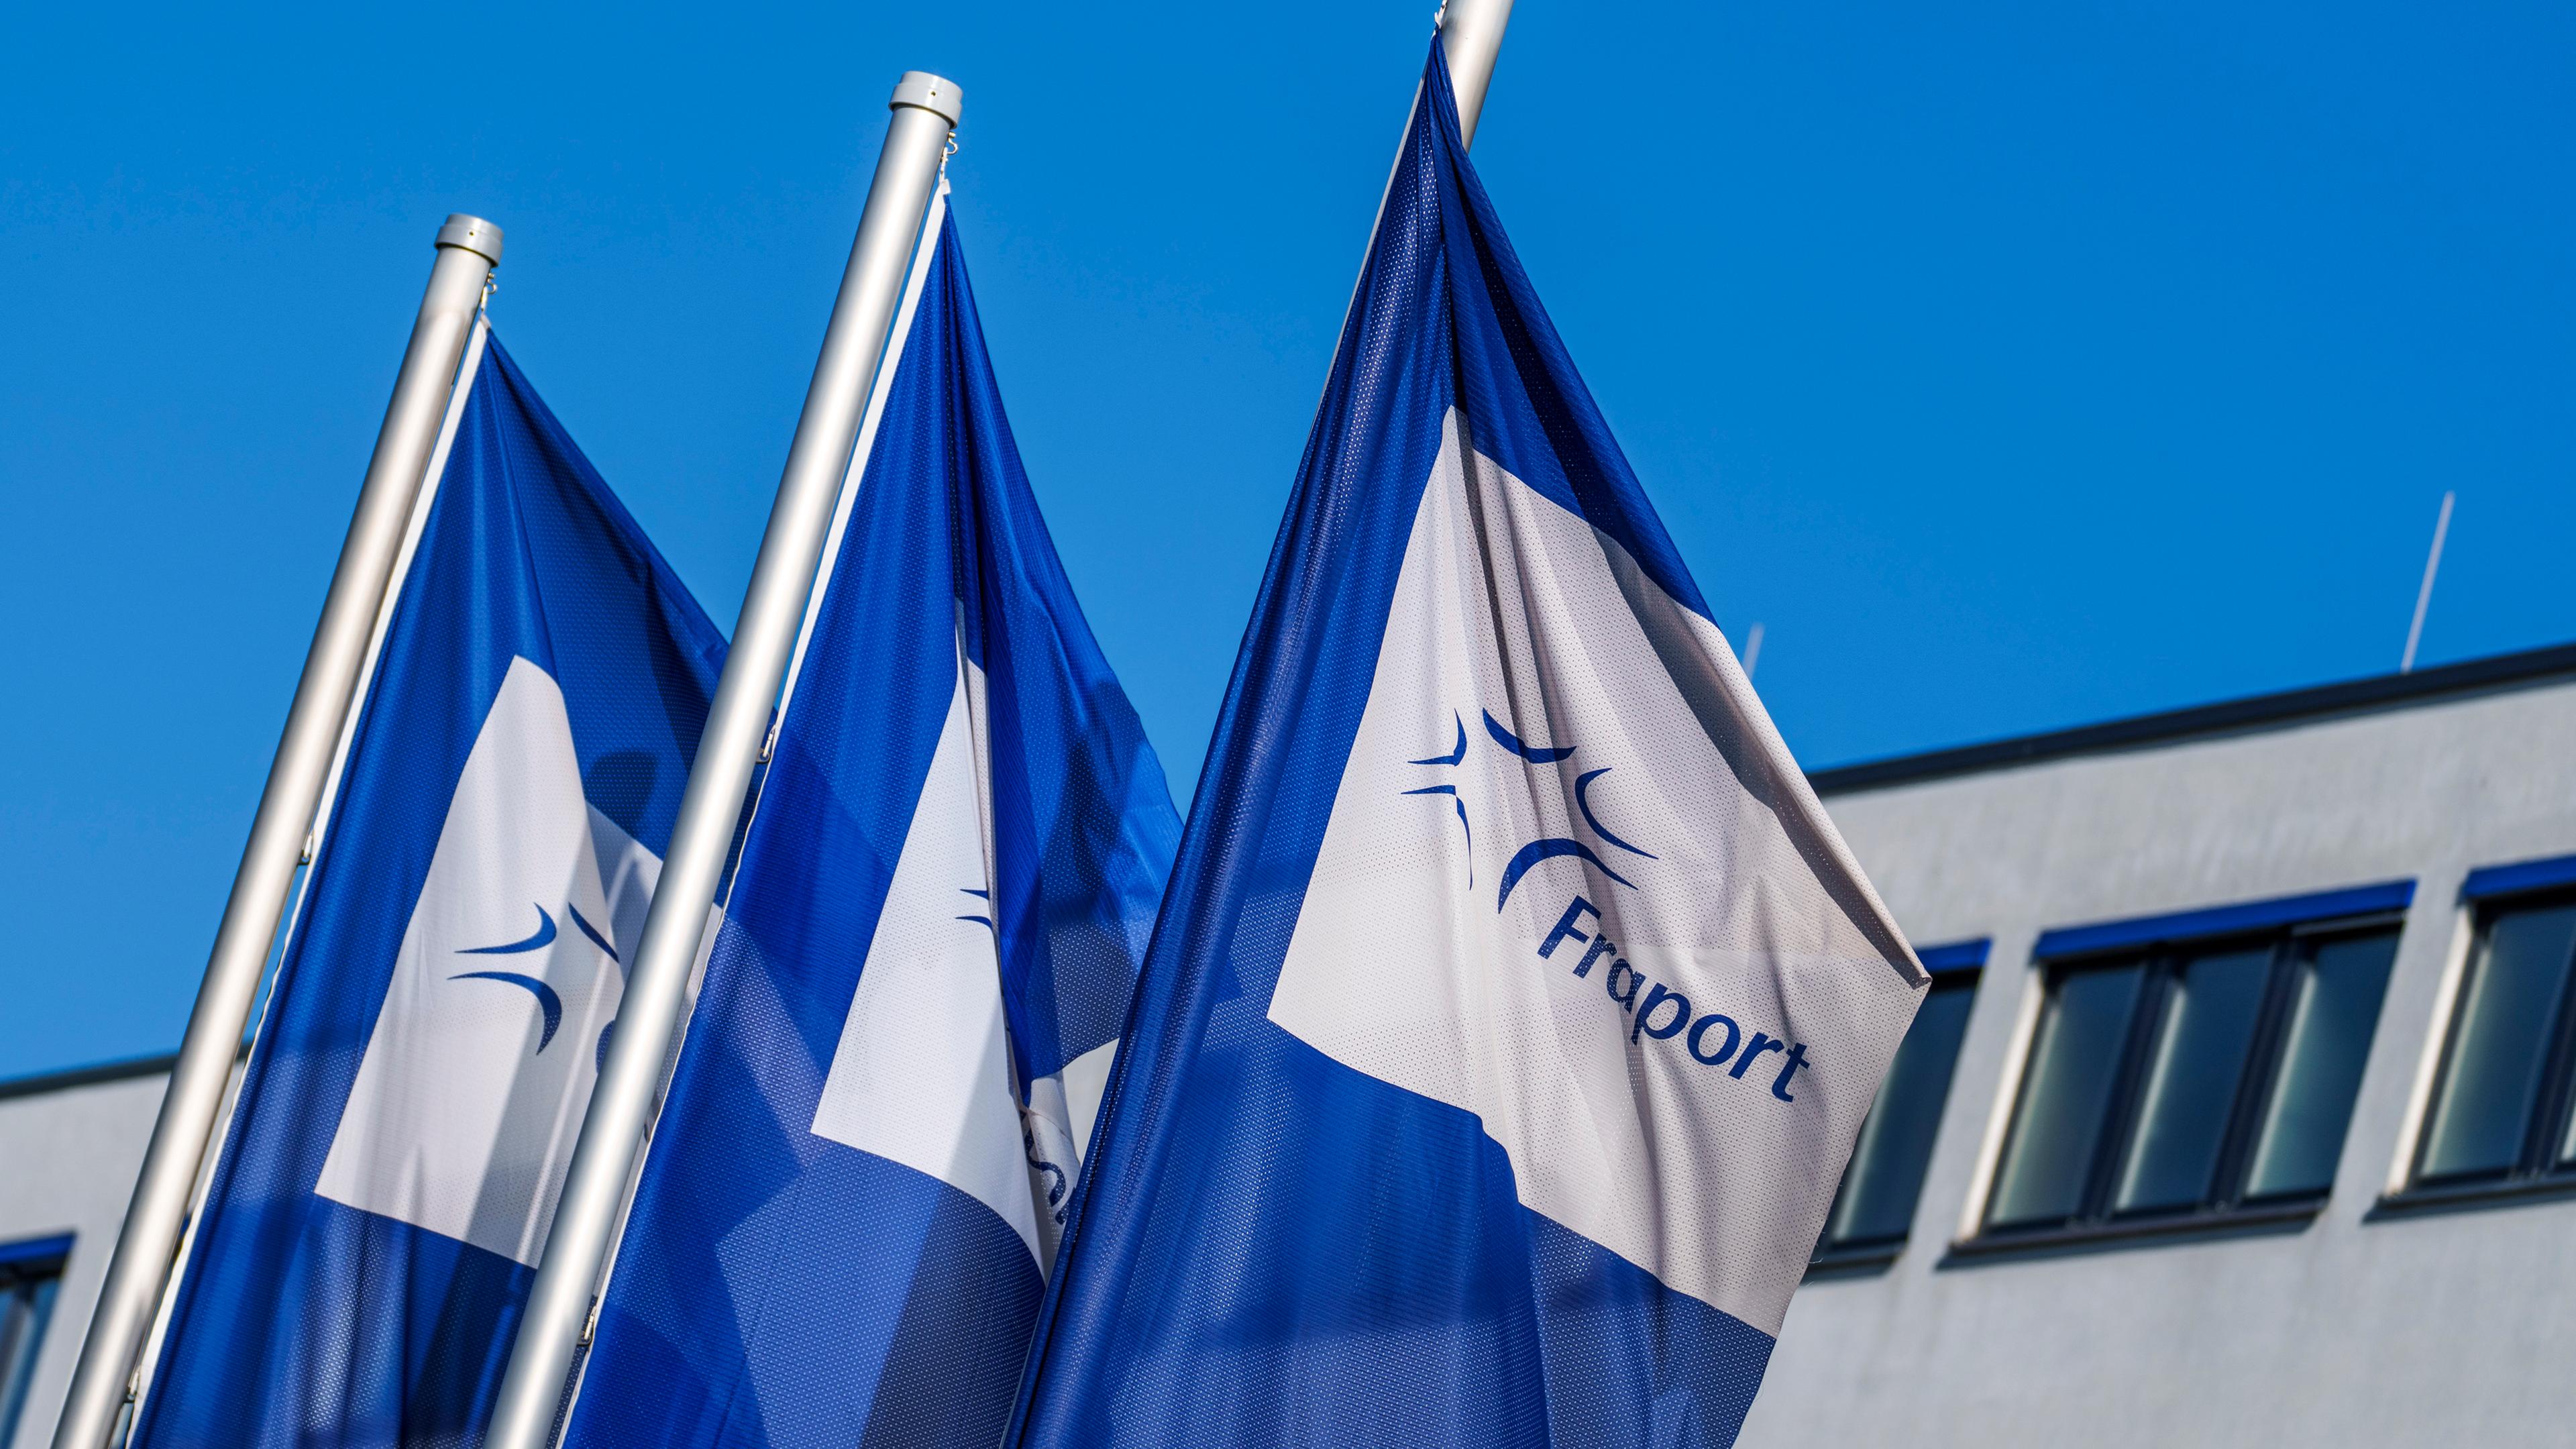 Hessen, Frankfurt/Main: Flaggen mit dem Logo der Fraport AG stehen vor der Firmenzentrale im Wind.